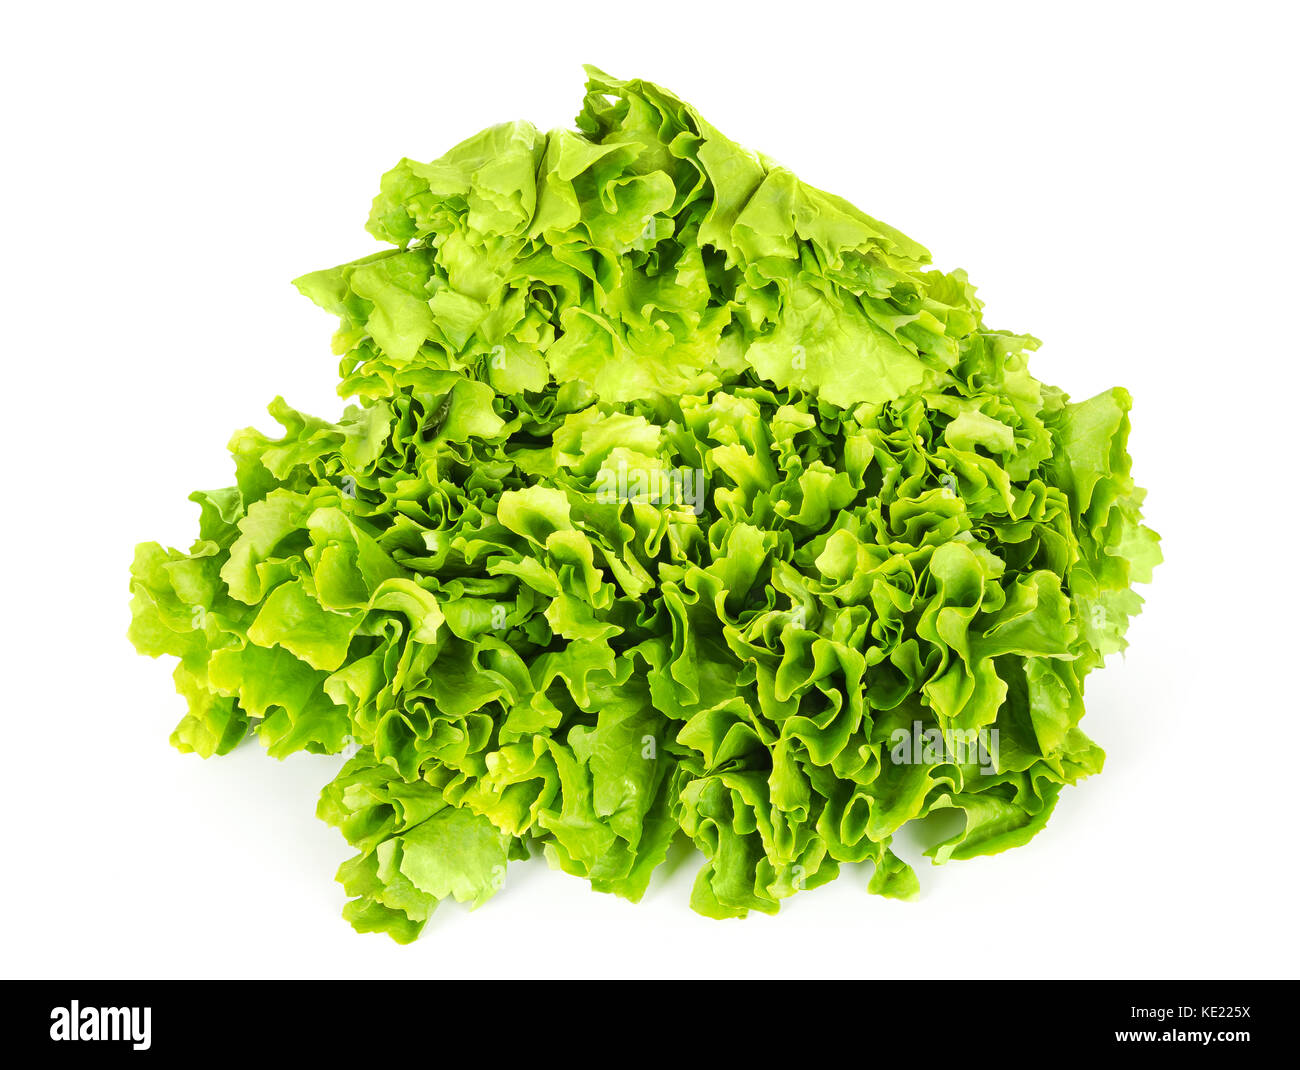 Salatköpfe endivien Vorderansicht über Weiß. Blatt Gemüse und Salat mit breiten, bitter verlässt. cichorium endivie var Latifolia. grüner Salat Kopf. Stockfoto